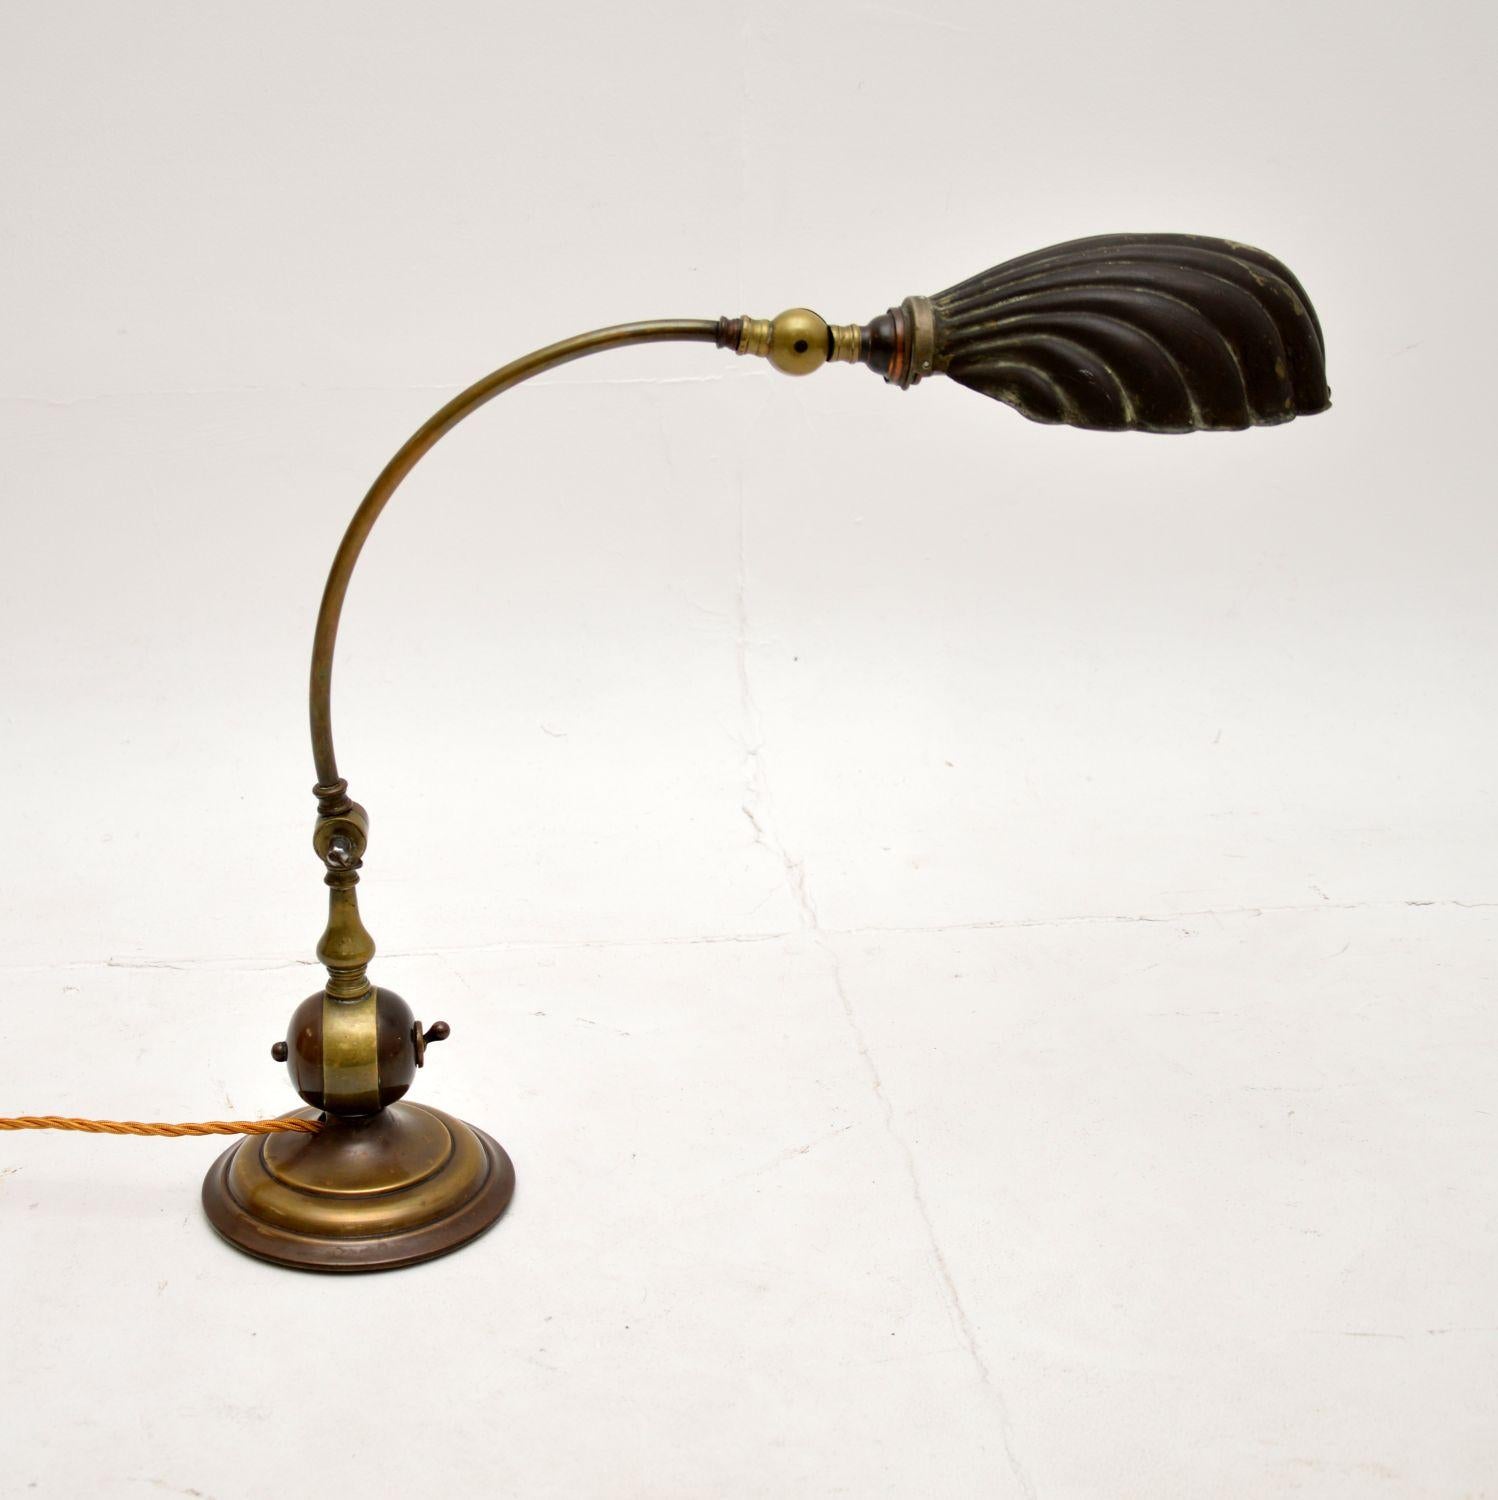 Très belle lampe de bureau ancienne en laiton à coquille de bénitier. Fabriqué en Angleterre, il date des années 1920-30.

Il est d'une qualité superbe et d'un design ravissant. L'angle est réglable grâce à des articulations au niveau du col et de